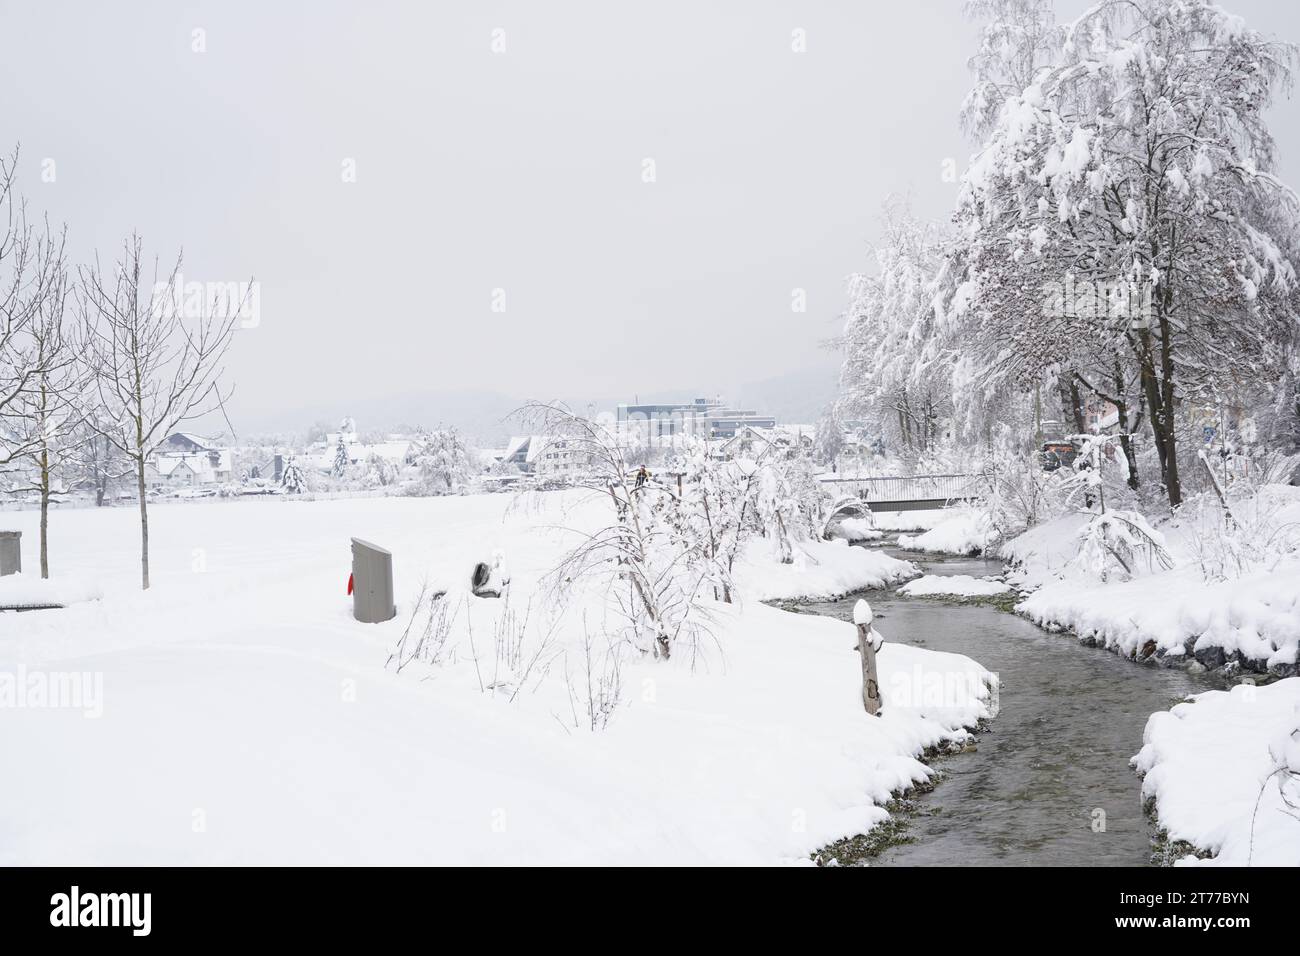 Brook or stream called Schäfflibach in village Urdorf, Switzerland. Captured in winter under extreme snowfall in January 2020. Stock Photo